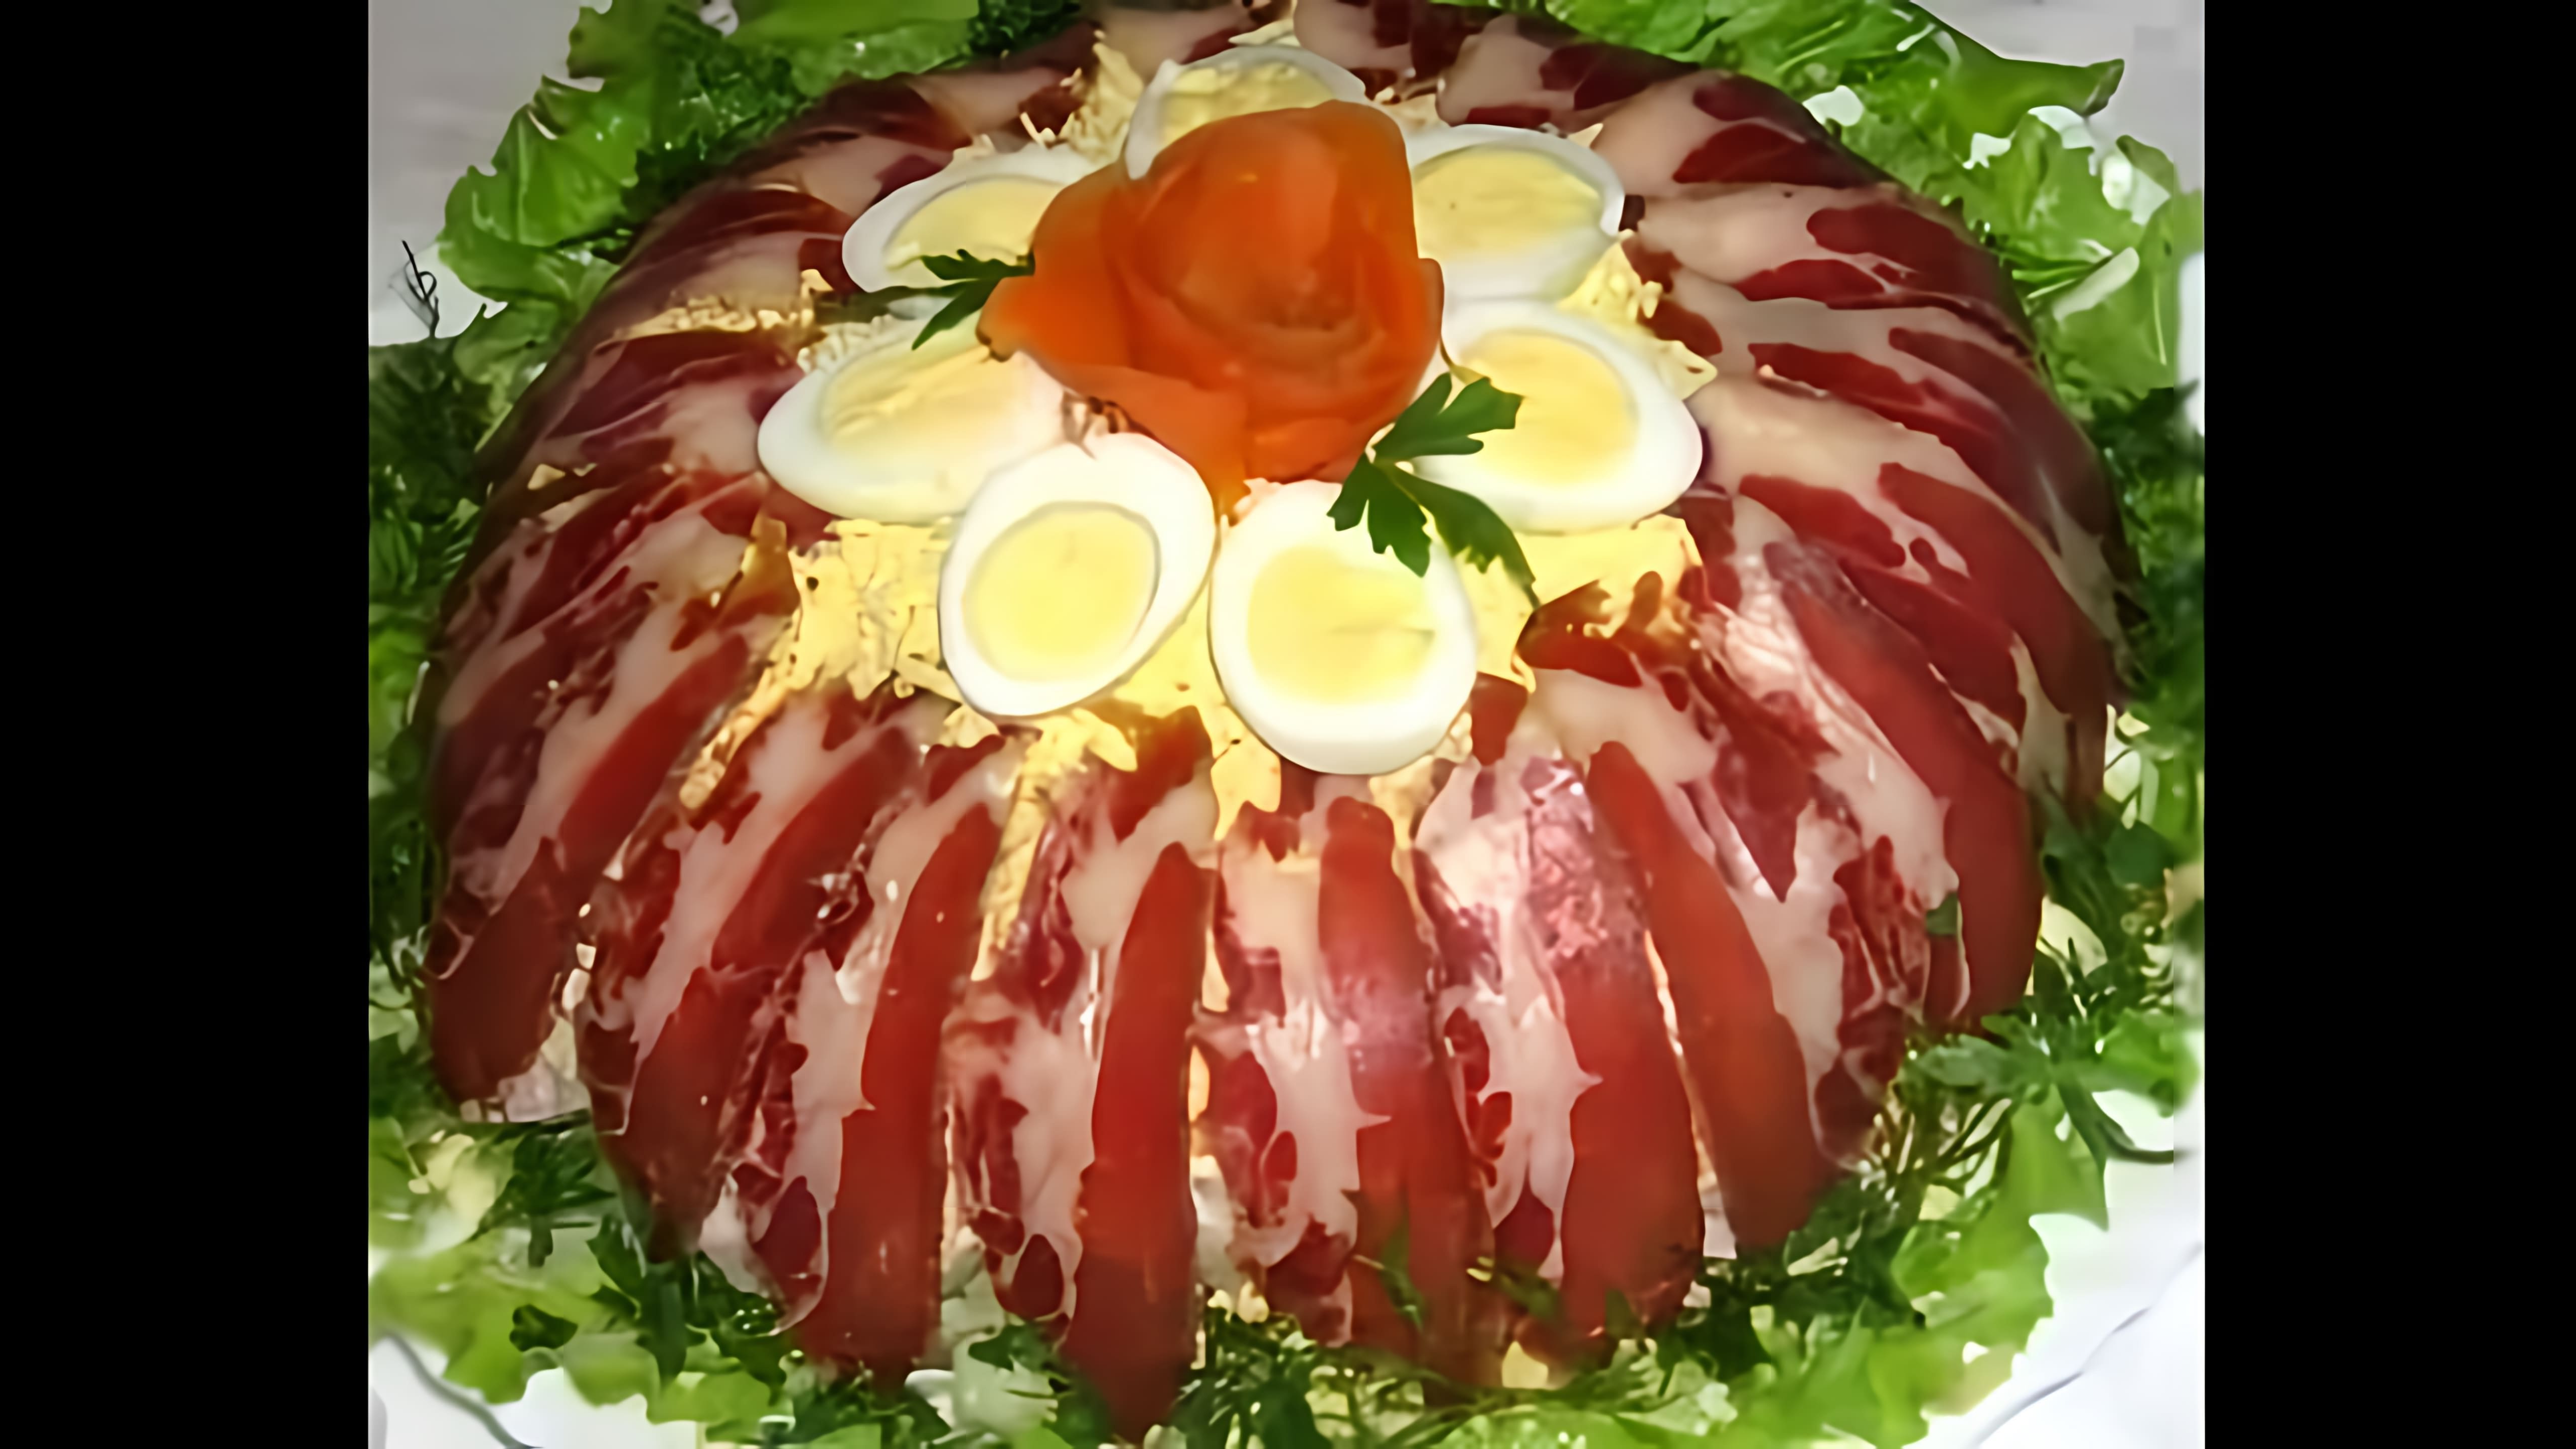 Салат "Королевский" - это вкусное и оригинальное блюдо, которое можно приготовить на любой праздник или семейный ужин